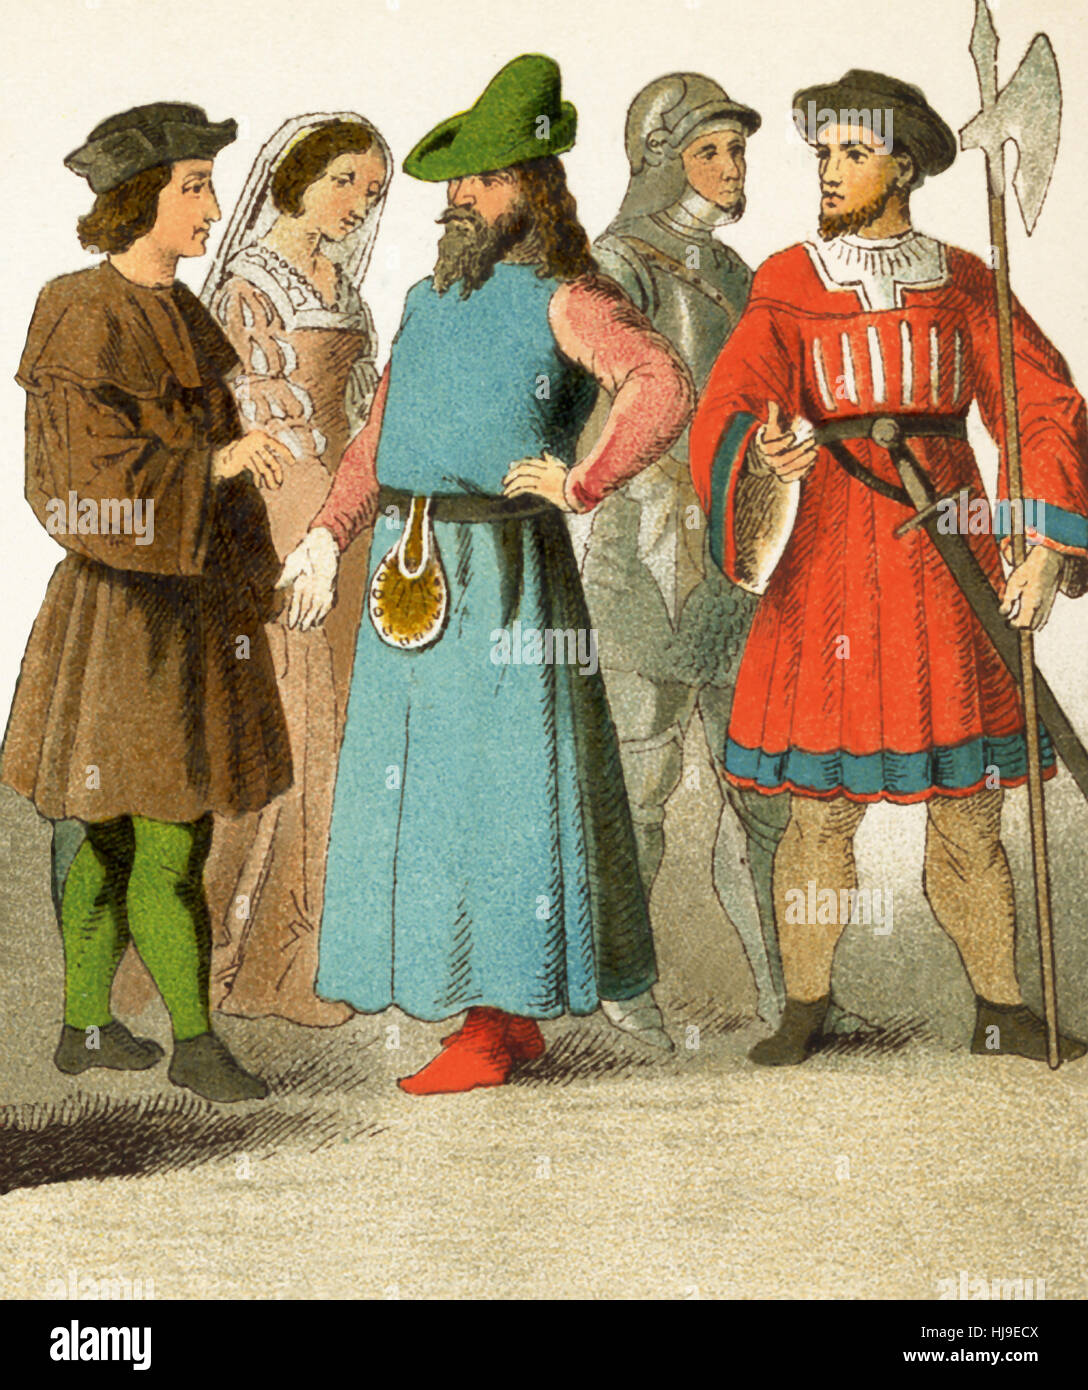 Le figure raffigurate qui rappresentano spagnolo nel 1400s. Essi sono, da sinistra a destra: uomo di rango, dama di corte, uomo di rango, cavaliere, soldato. L'illustrazione risale al 1882. Foto Stock